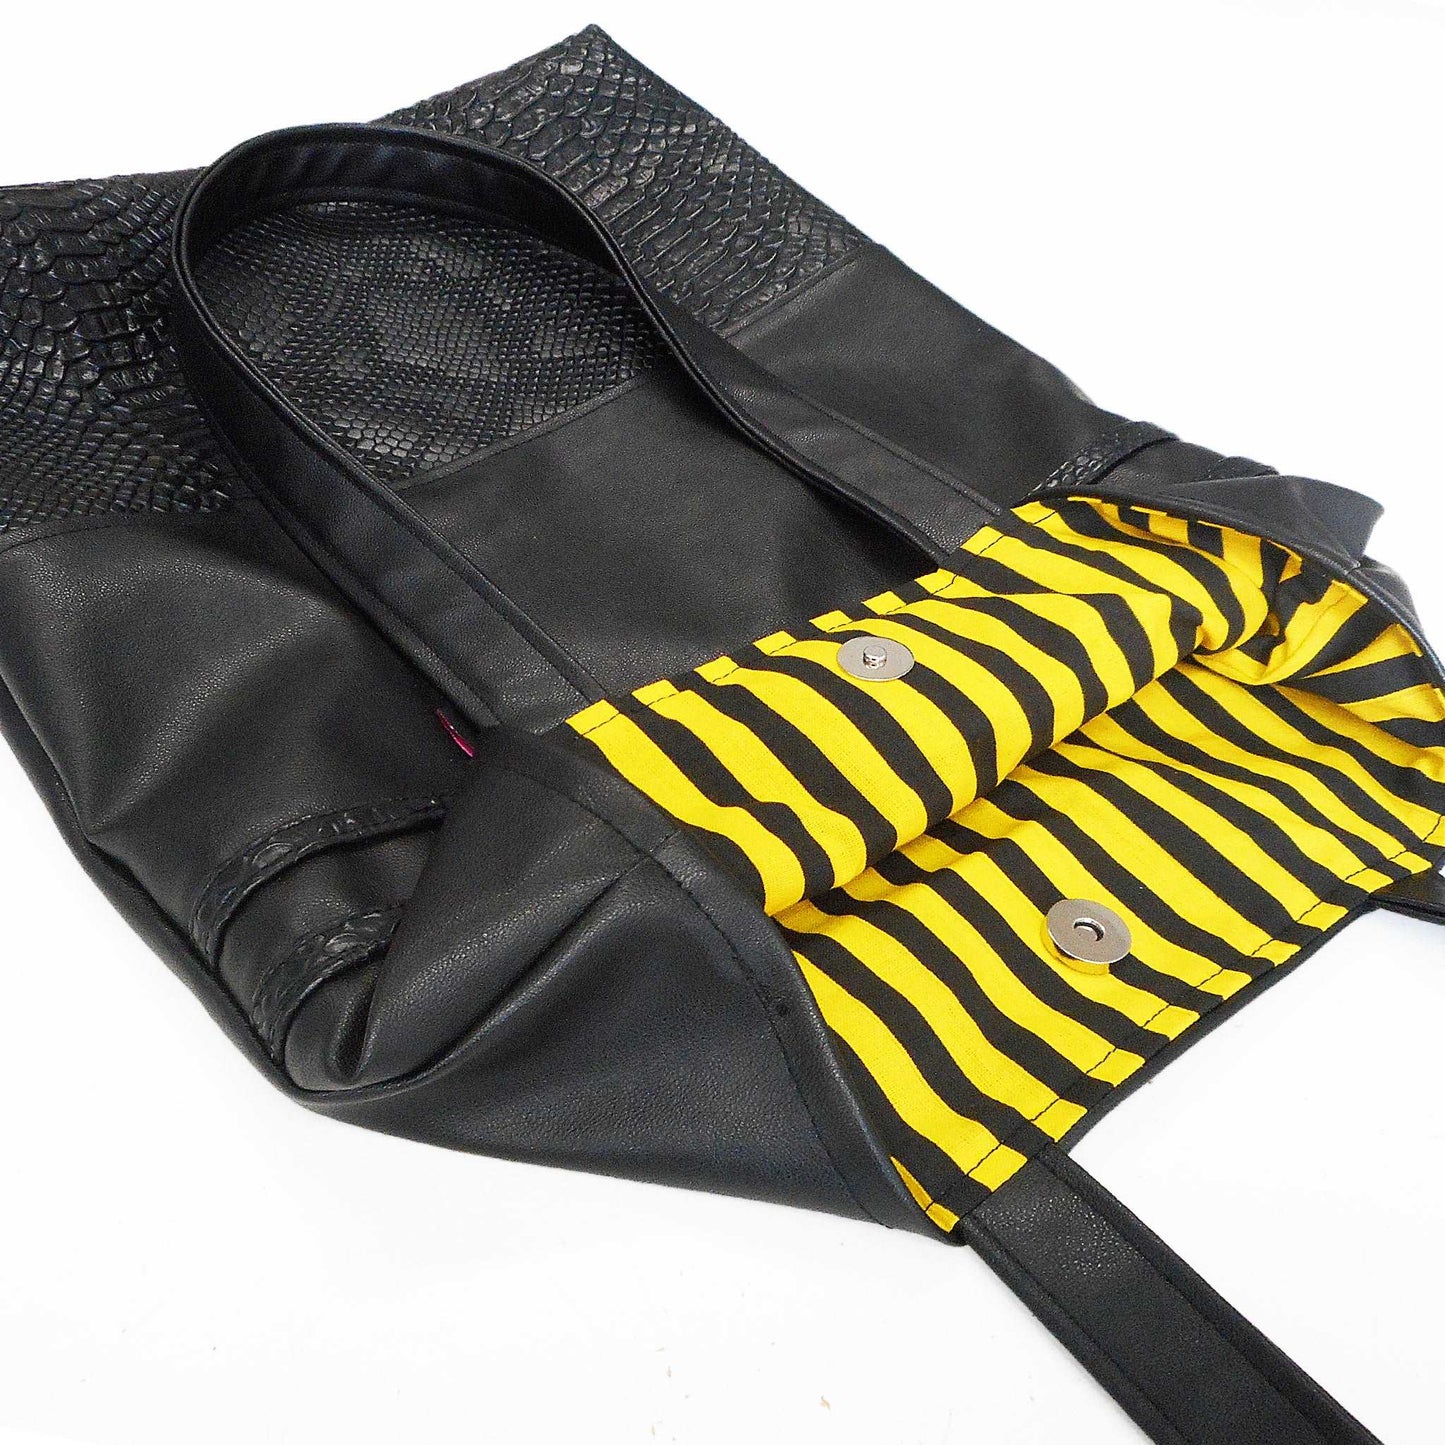 handgemachtes einzelstück. Tote Tasche aus schwarzem Ledermitat kombiniert mit Lederimitat in Schlangenoptik und gestreiftem Futter in Gelb und Schwarz.